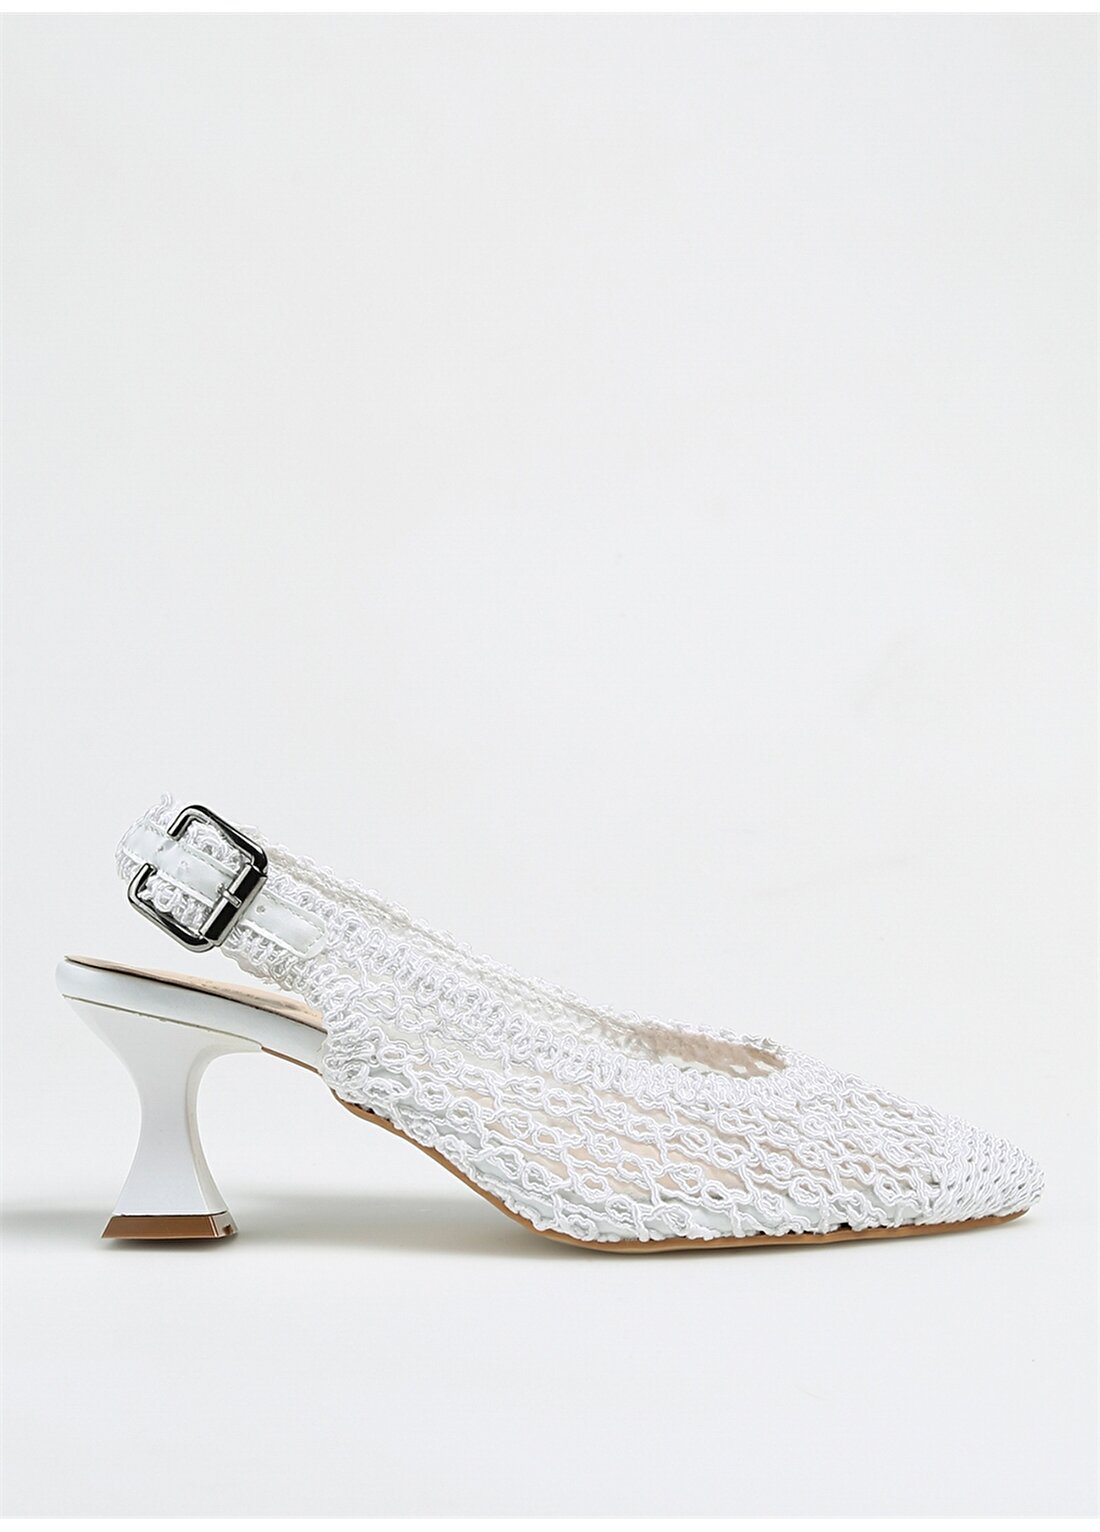 Pierre Cardin Beyaz Kadın Topuklu Ayakkabı PC-52260